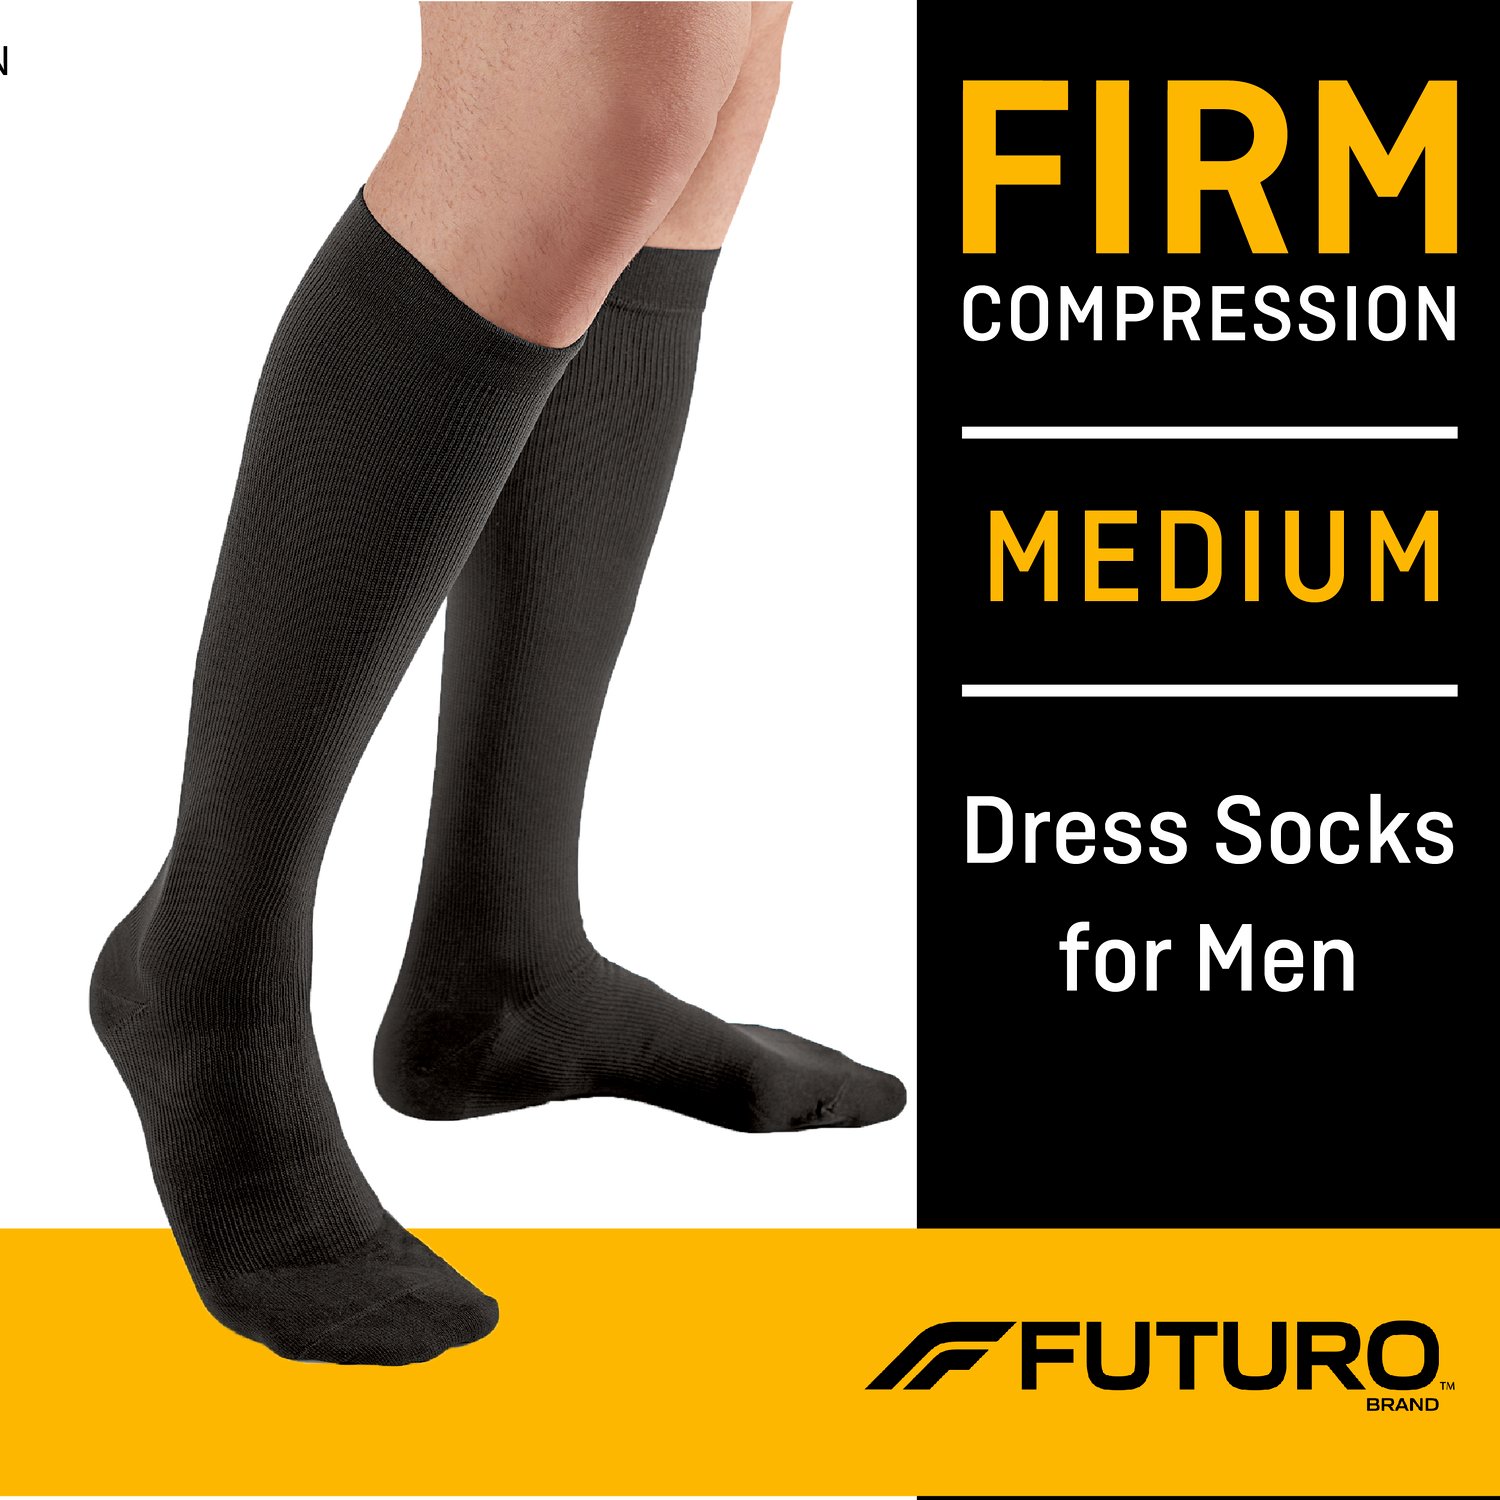 7100155040 - FUTURO Dress Socks for Men, 71035BLEN, Medium, Black